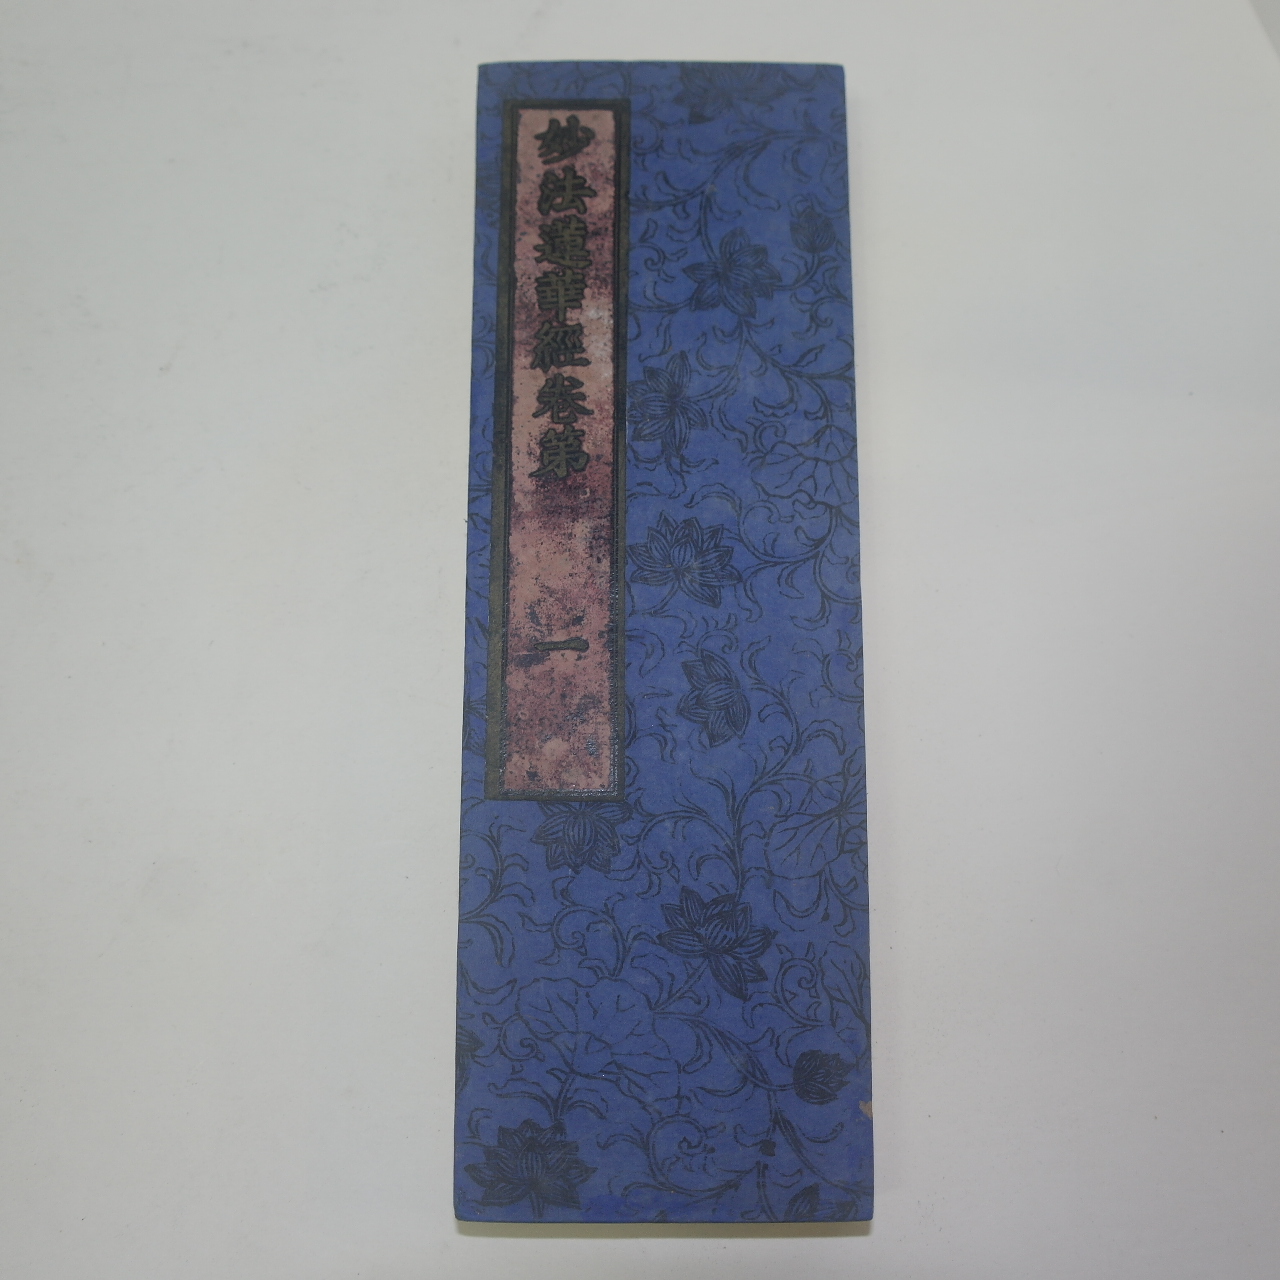 1894년(明治27年)필사 시주기가 있는 화지에 치자물을 들인 목판본 불경 묘법연화경 8책완질